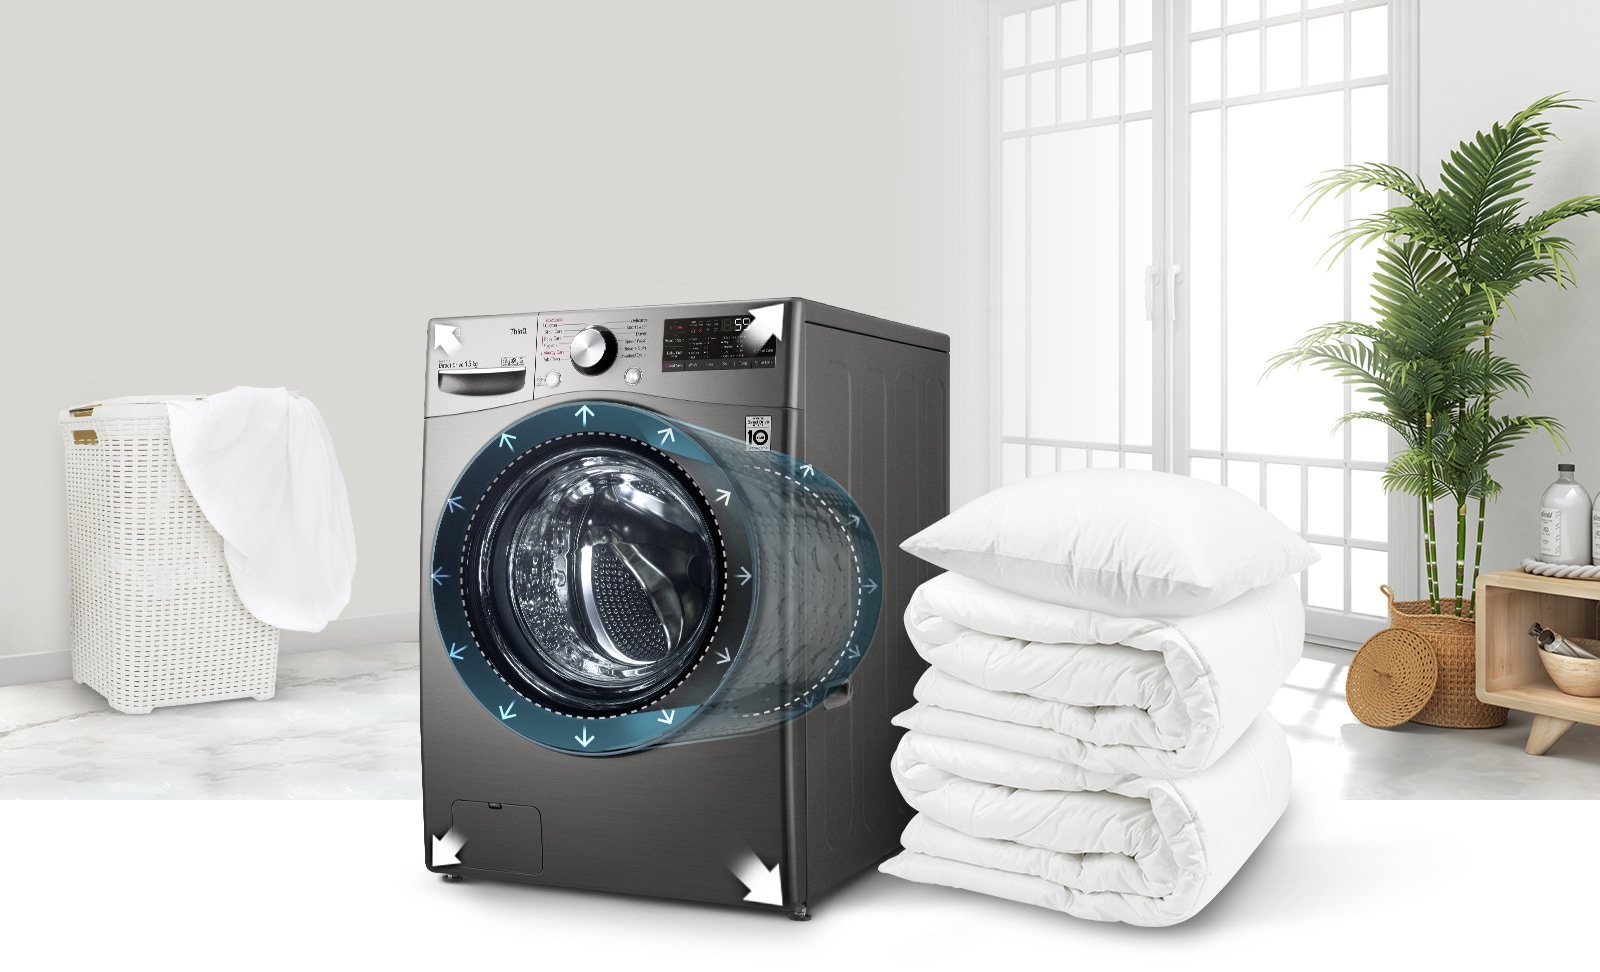 Il y a une machine à laver dans la maison et une couverture à côté. La partie centrale de la machine à laver avec un moteur donne un effet de transparence, montrant l'intérieur de la machine à laver.